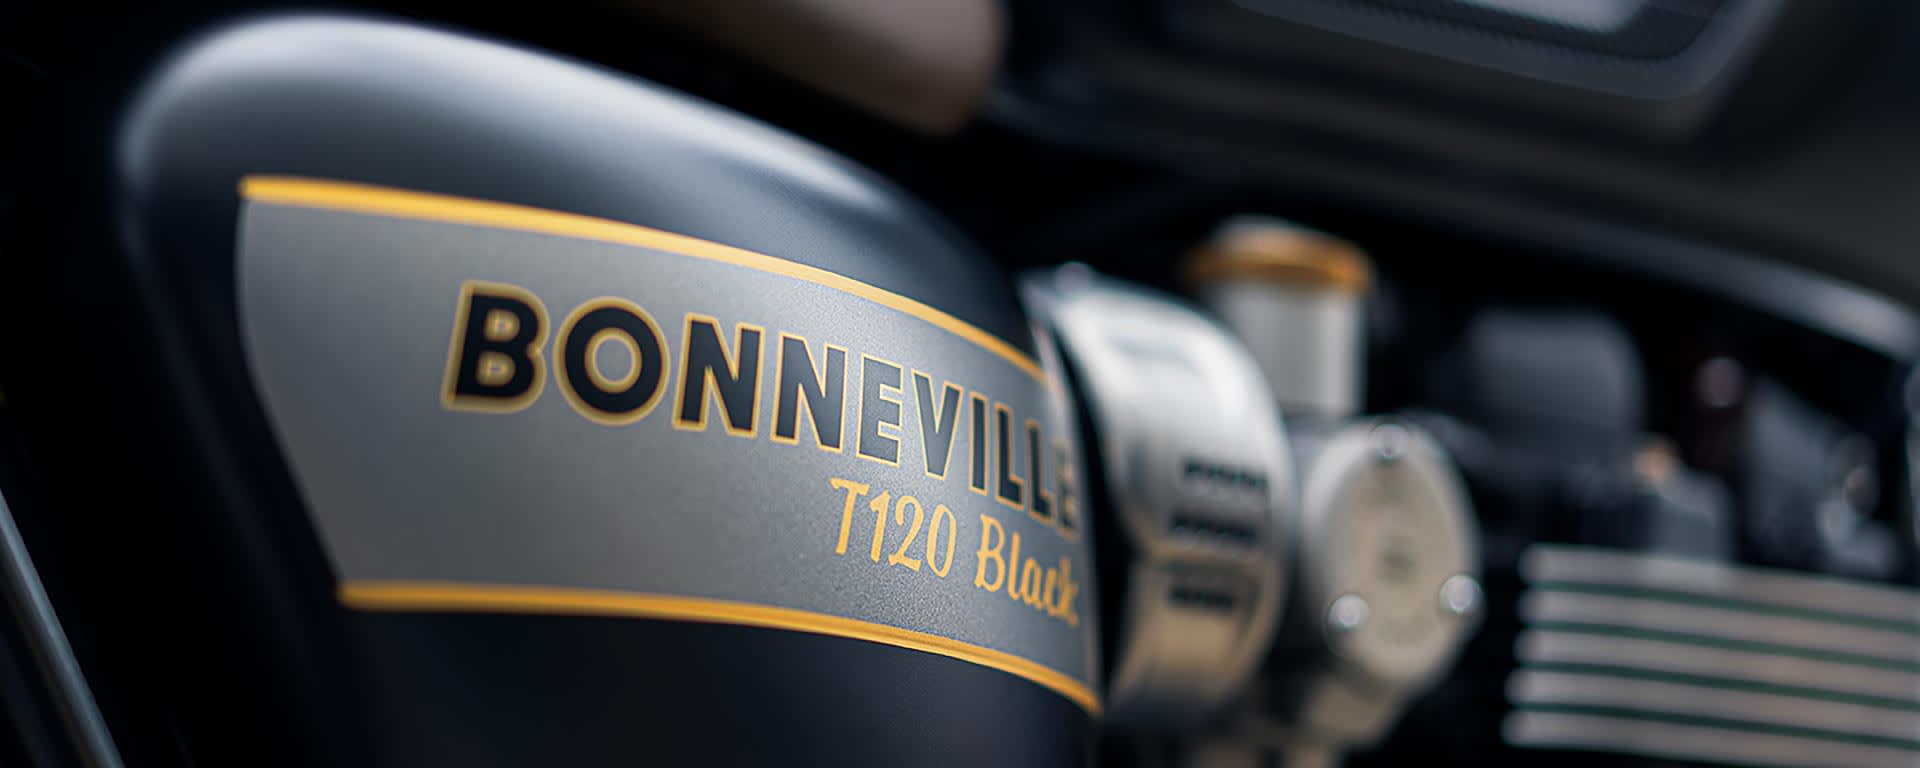 Bonneville T120 Black Gold Line Edition)